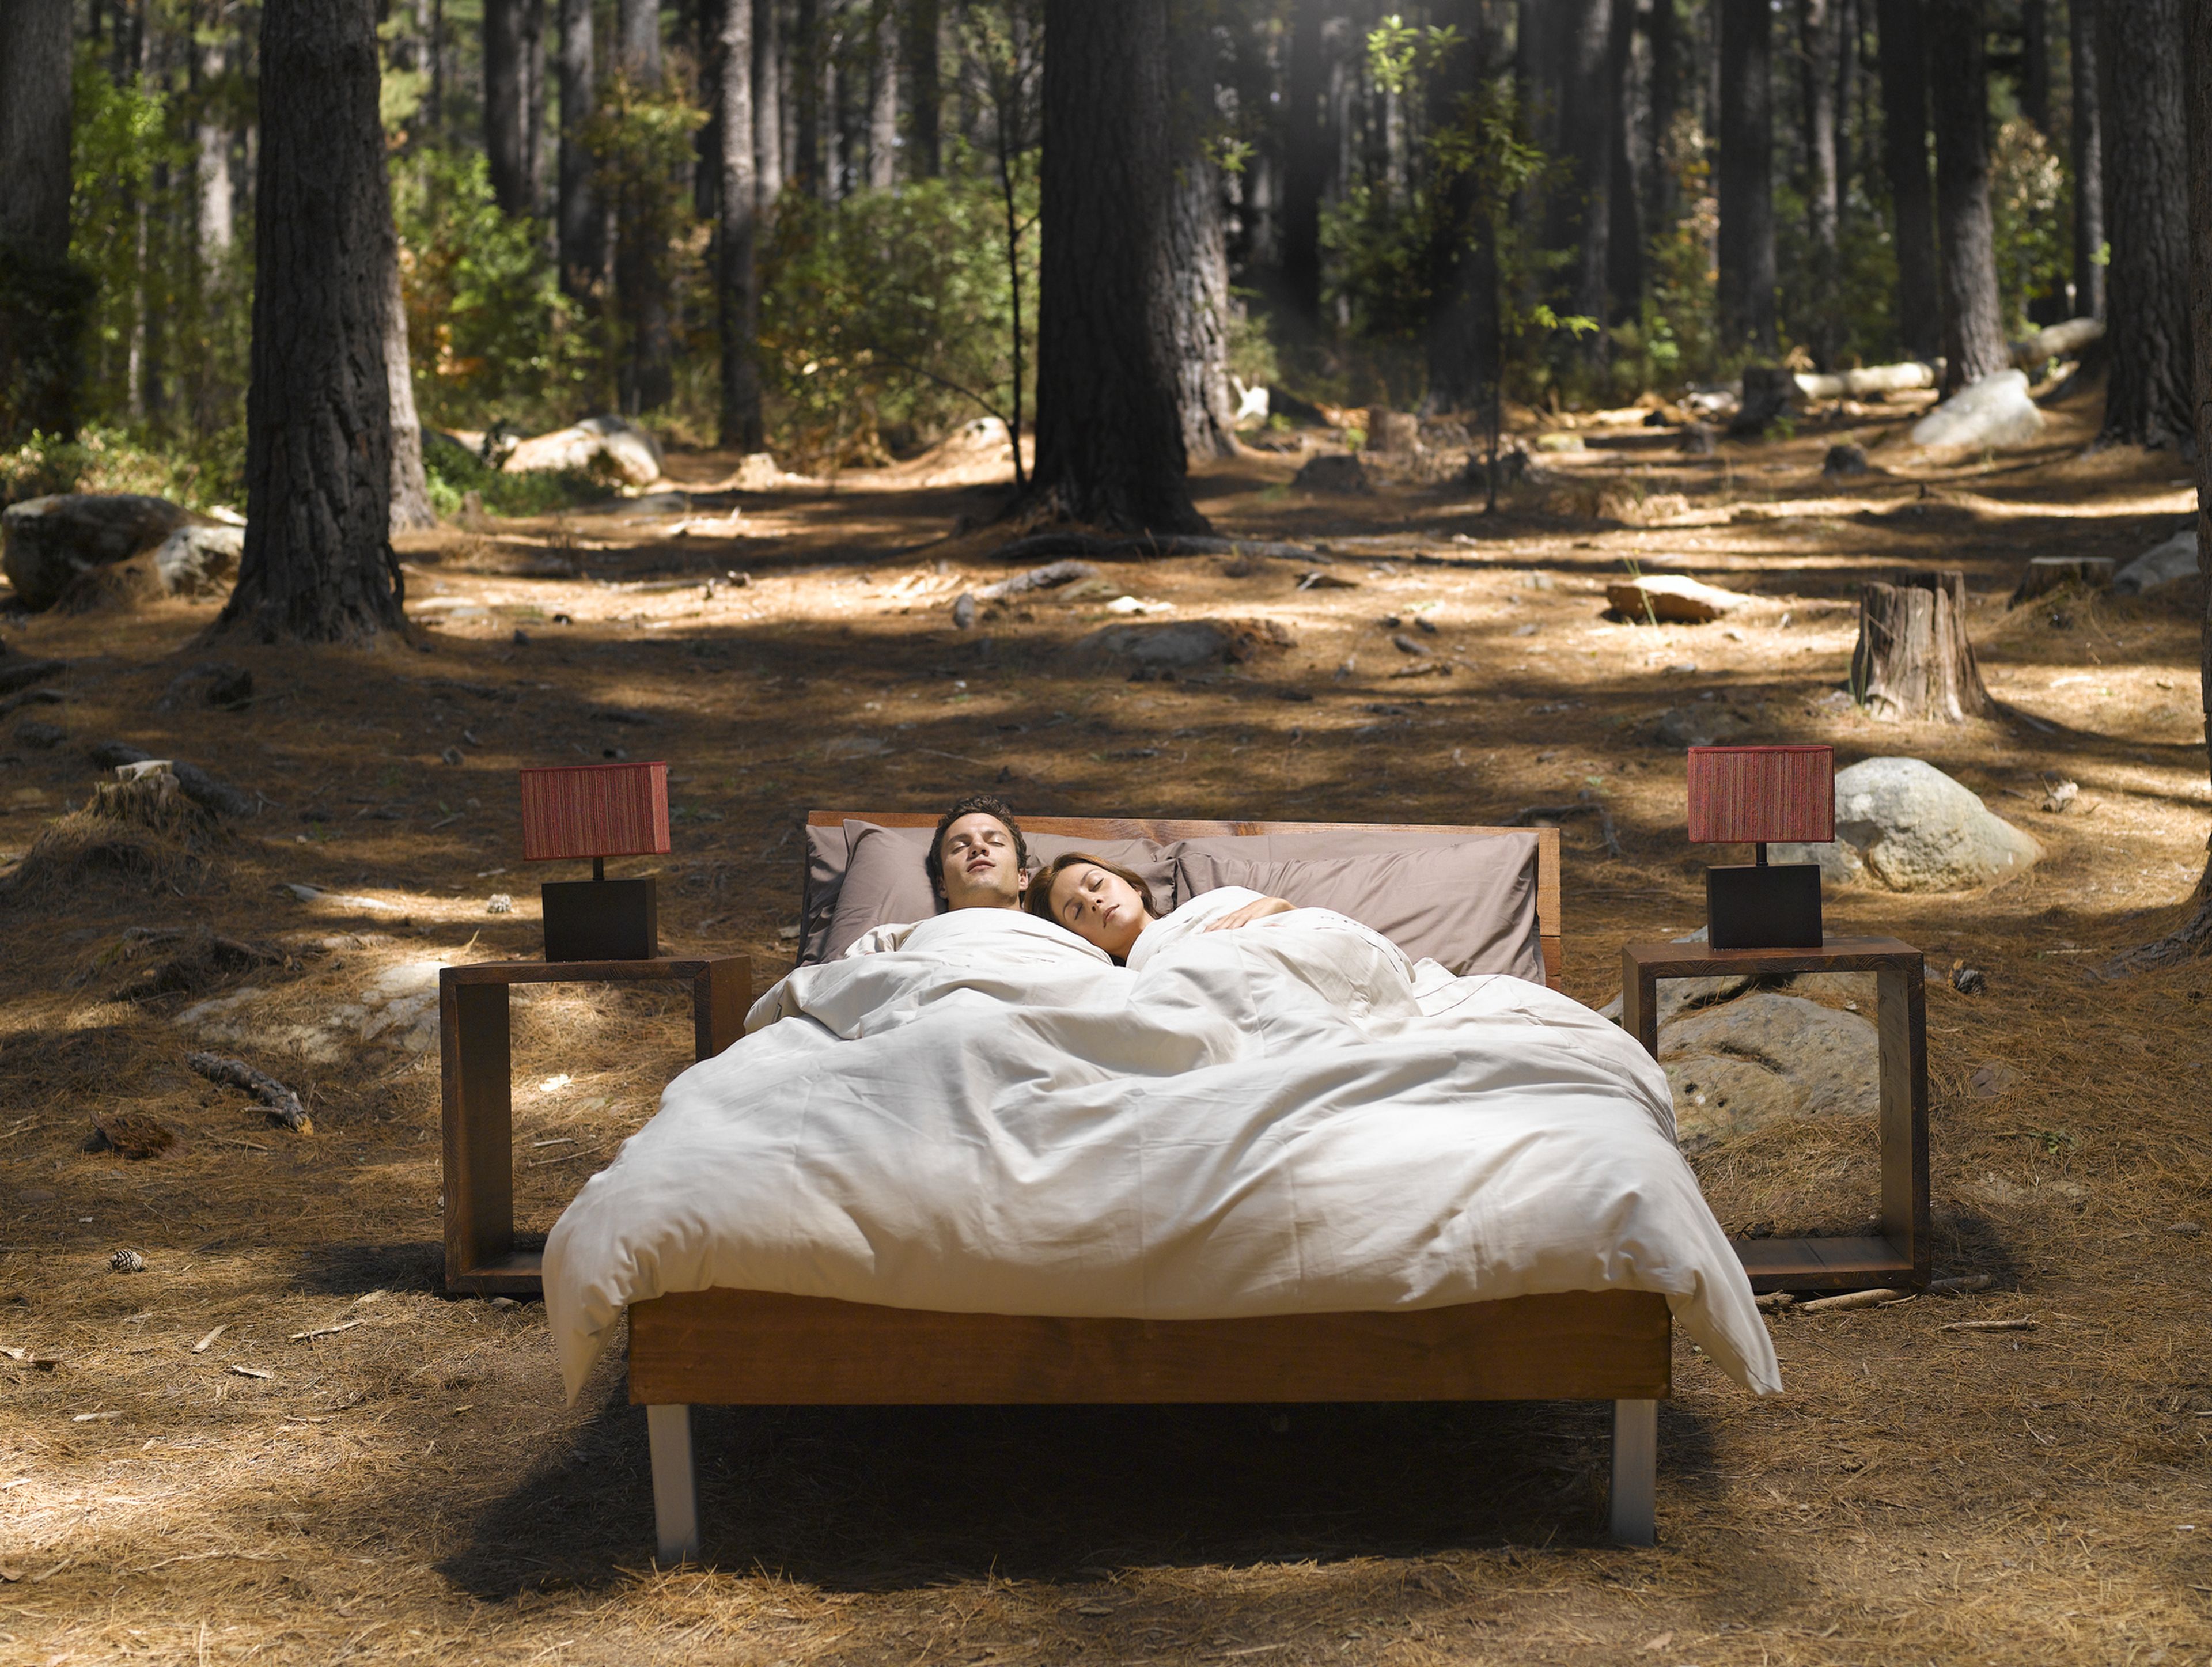 2 personas duermen en una cama en medio del campo.